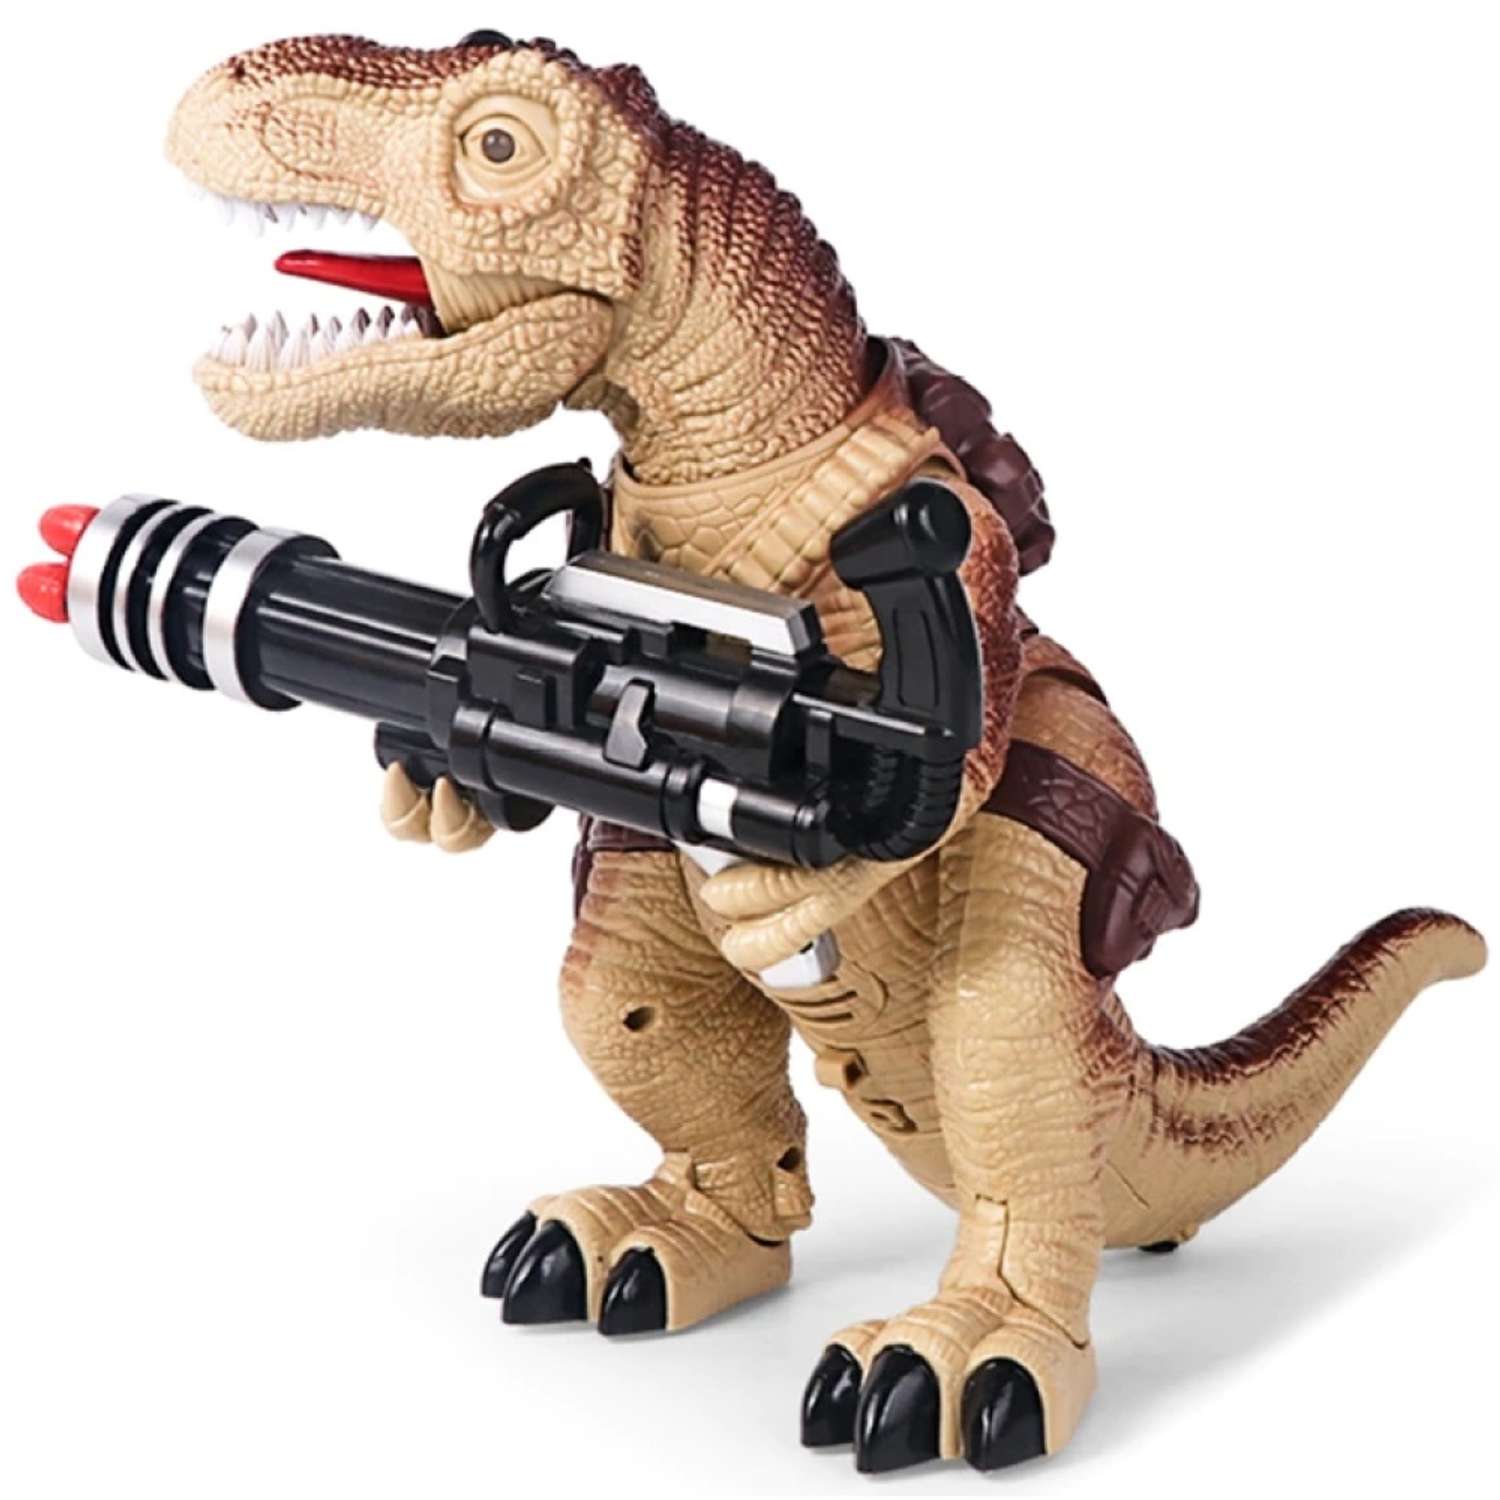 Радиоуправляемый динозавр Dinosaur игрушка детская динозавр на пульте управления стреляет стрелами - фото 1